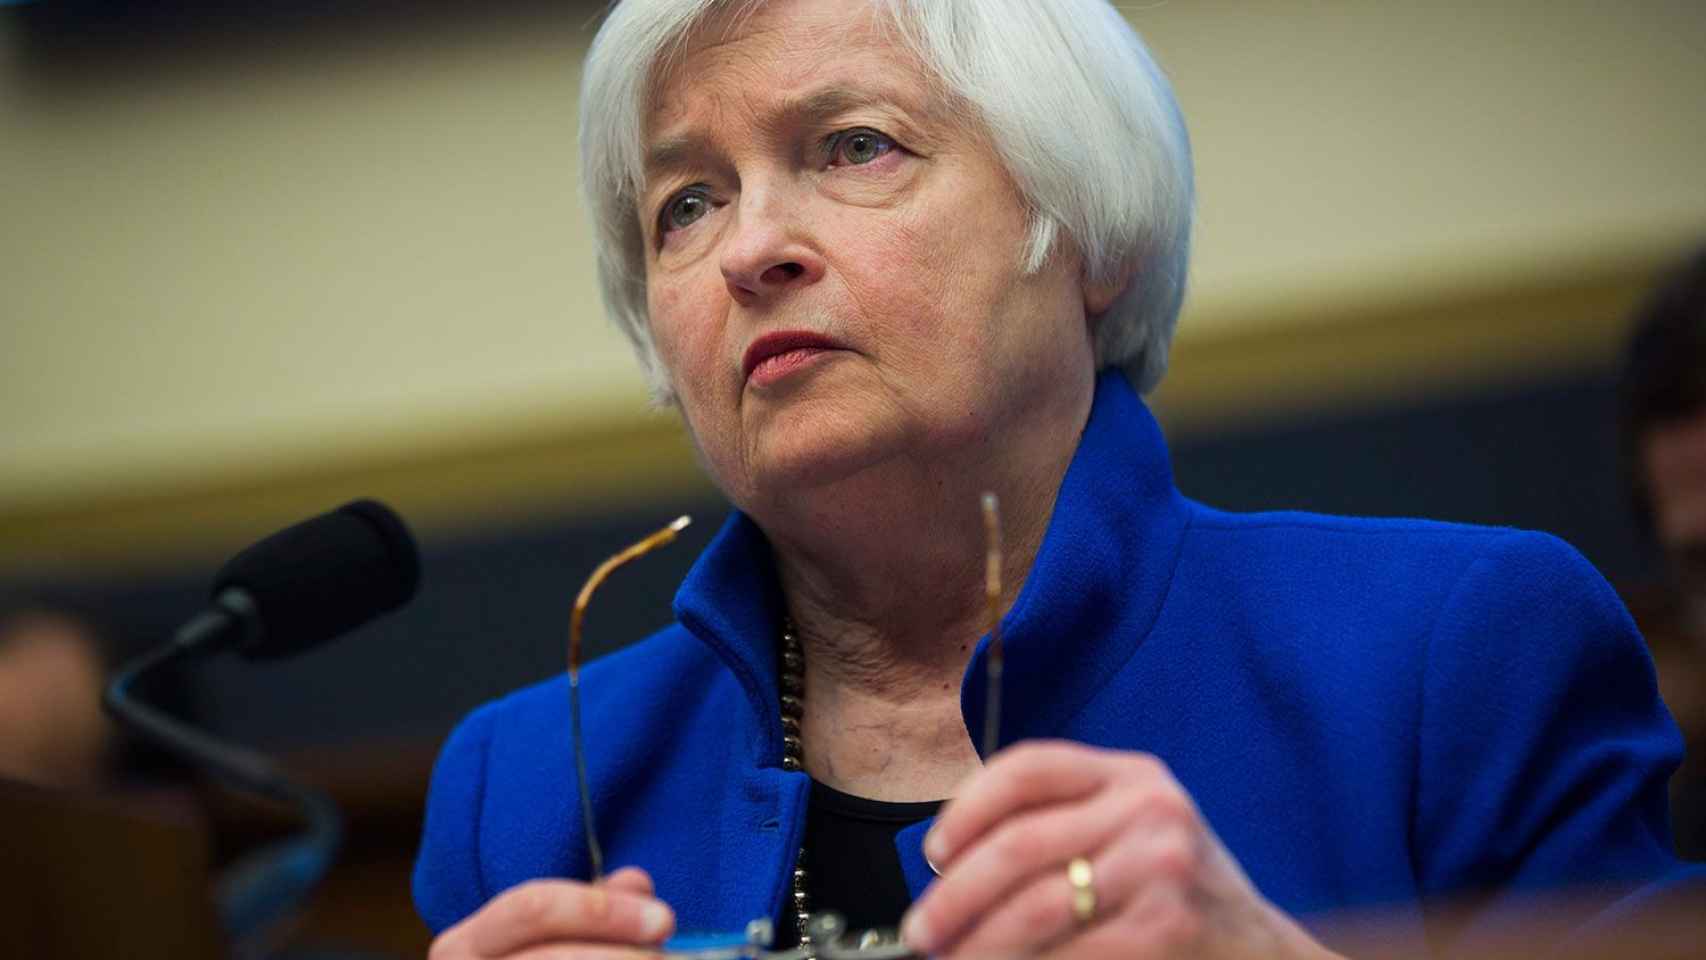 Janet Yellen, presidenta de la Reserva Federal de Estados Unidos, en una imagen de archivo